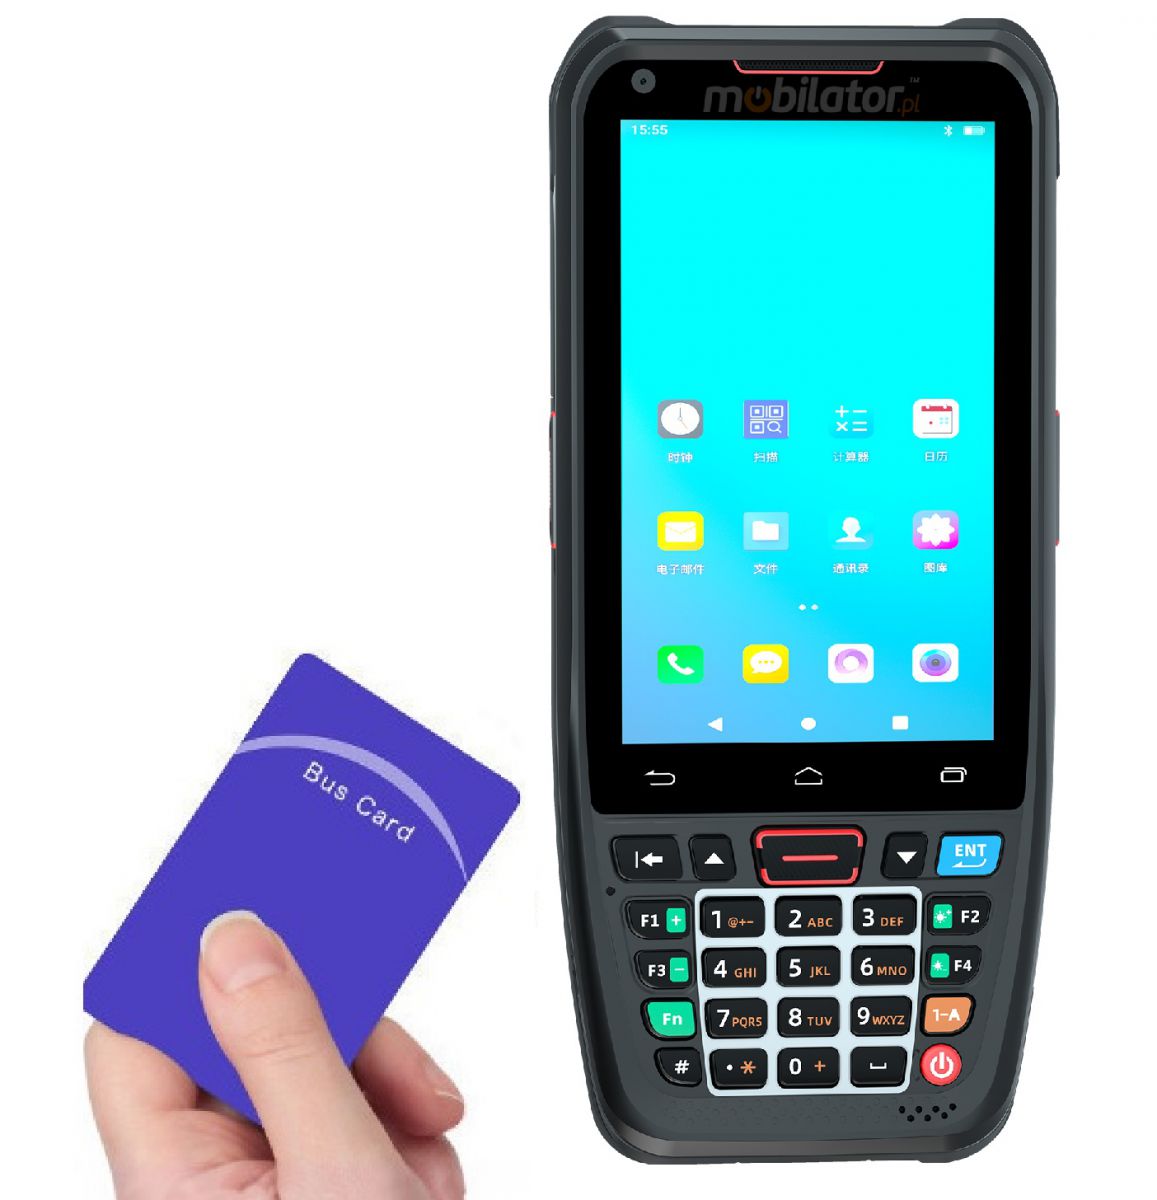 MobiPad A400N v.3 - Przemysowy terminal danych z NFC, Bluetooth, GPS, czterordzeniowym procesorem oraz skanerem kodw 1D